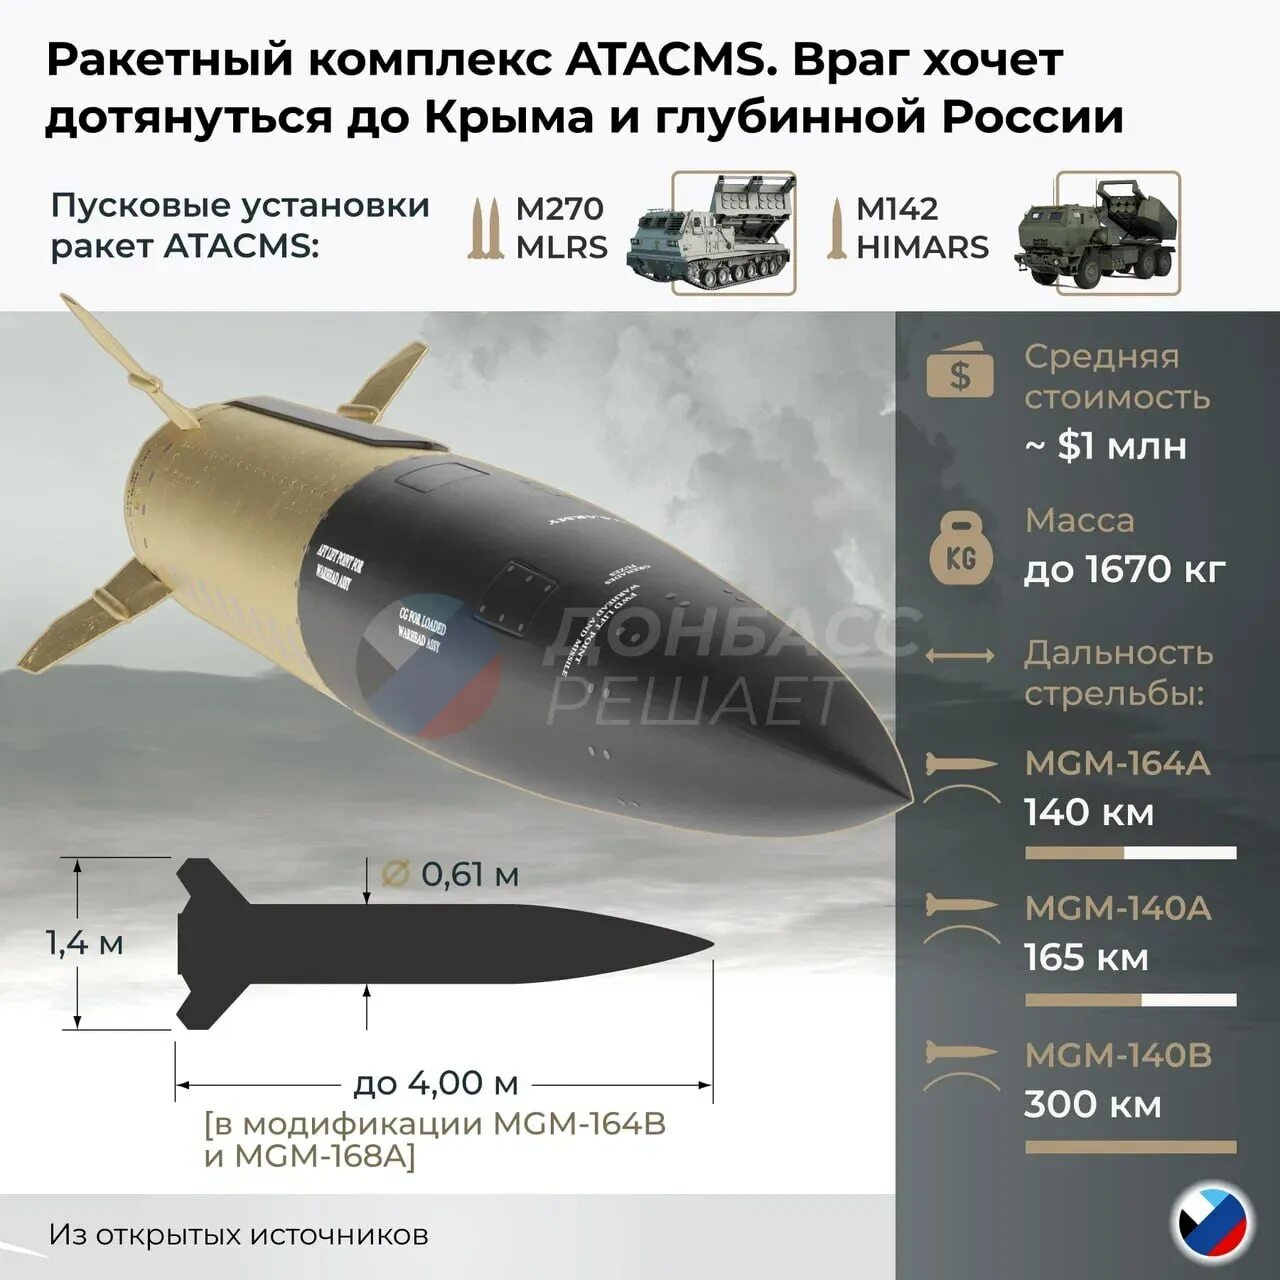 Атакмс характеристики дальность стрельбы. Ракета MGM-140 atacms. MGM-140 atacms характеристики. Atacms ракета характеристики. MGM-168 atacms.